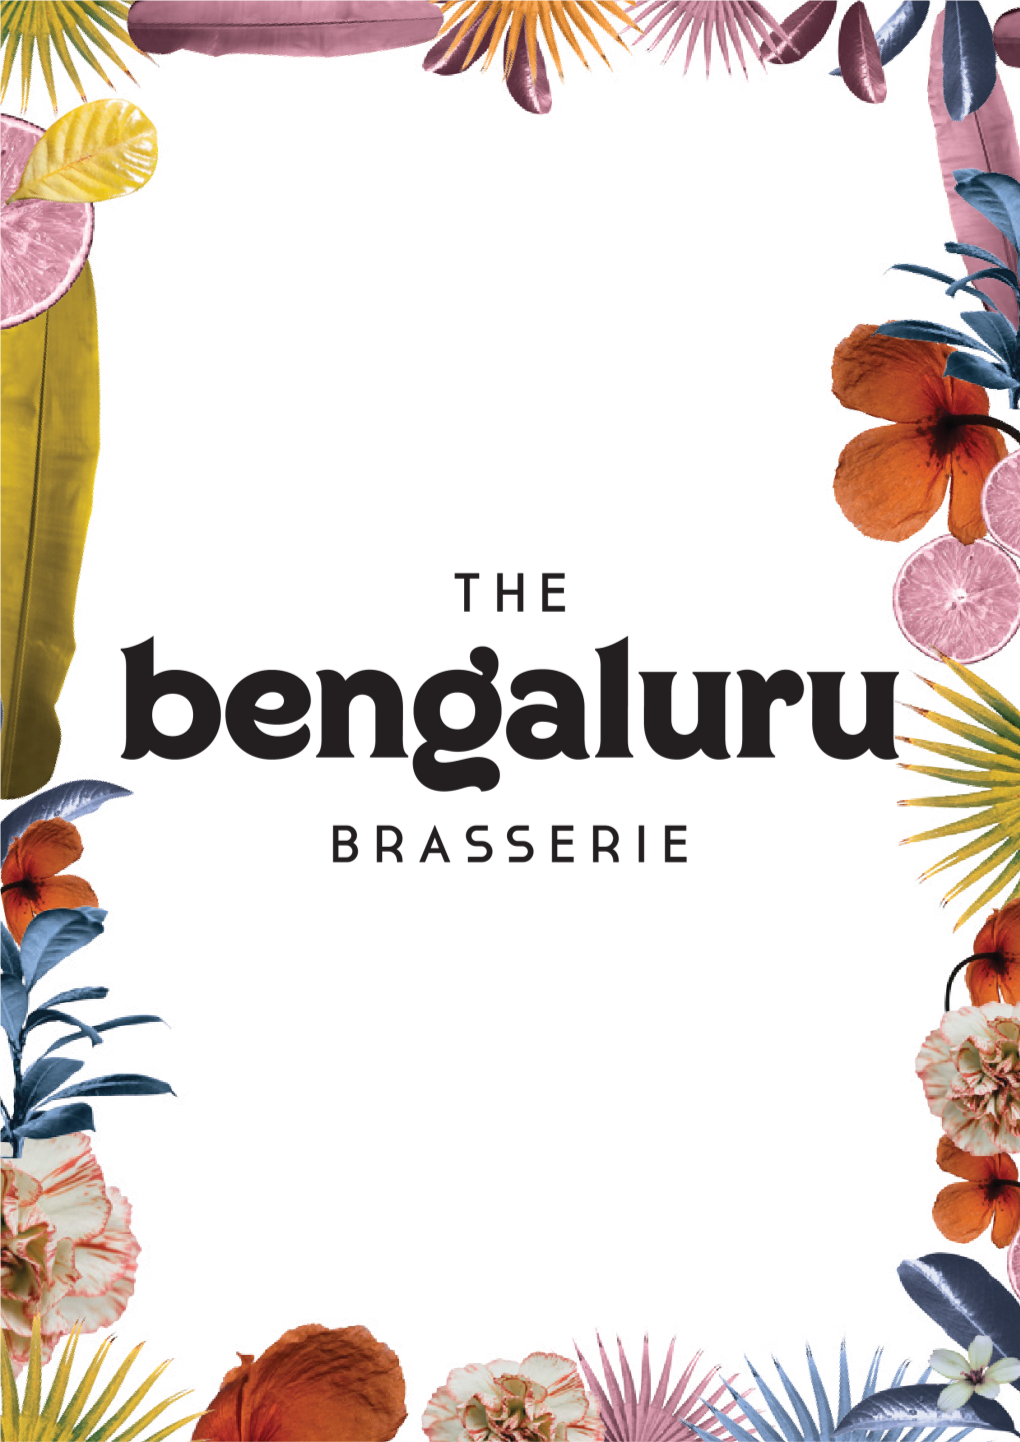 The Bengaluru Brasserie